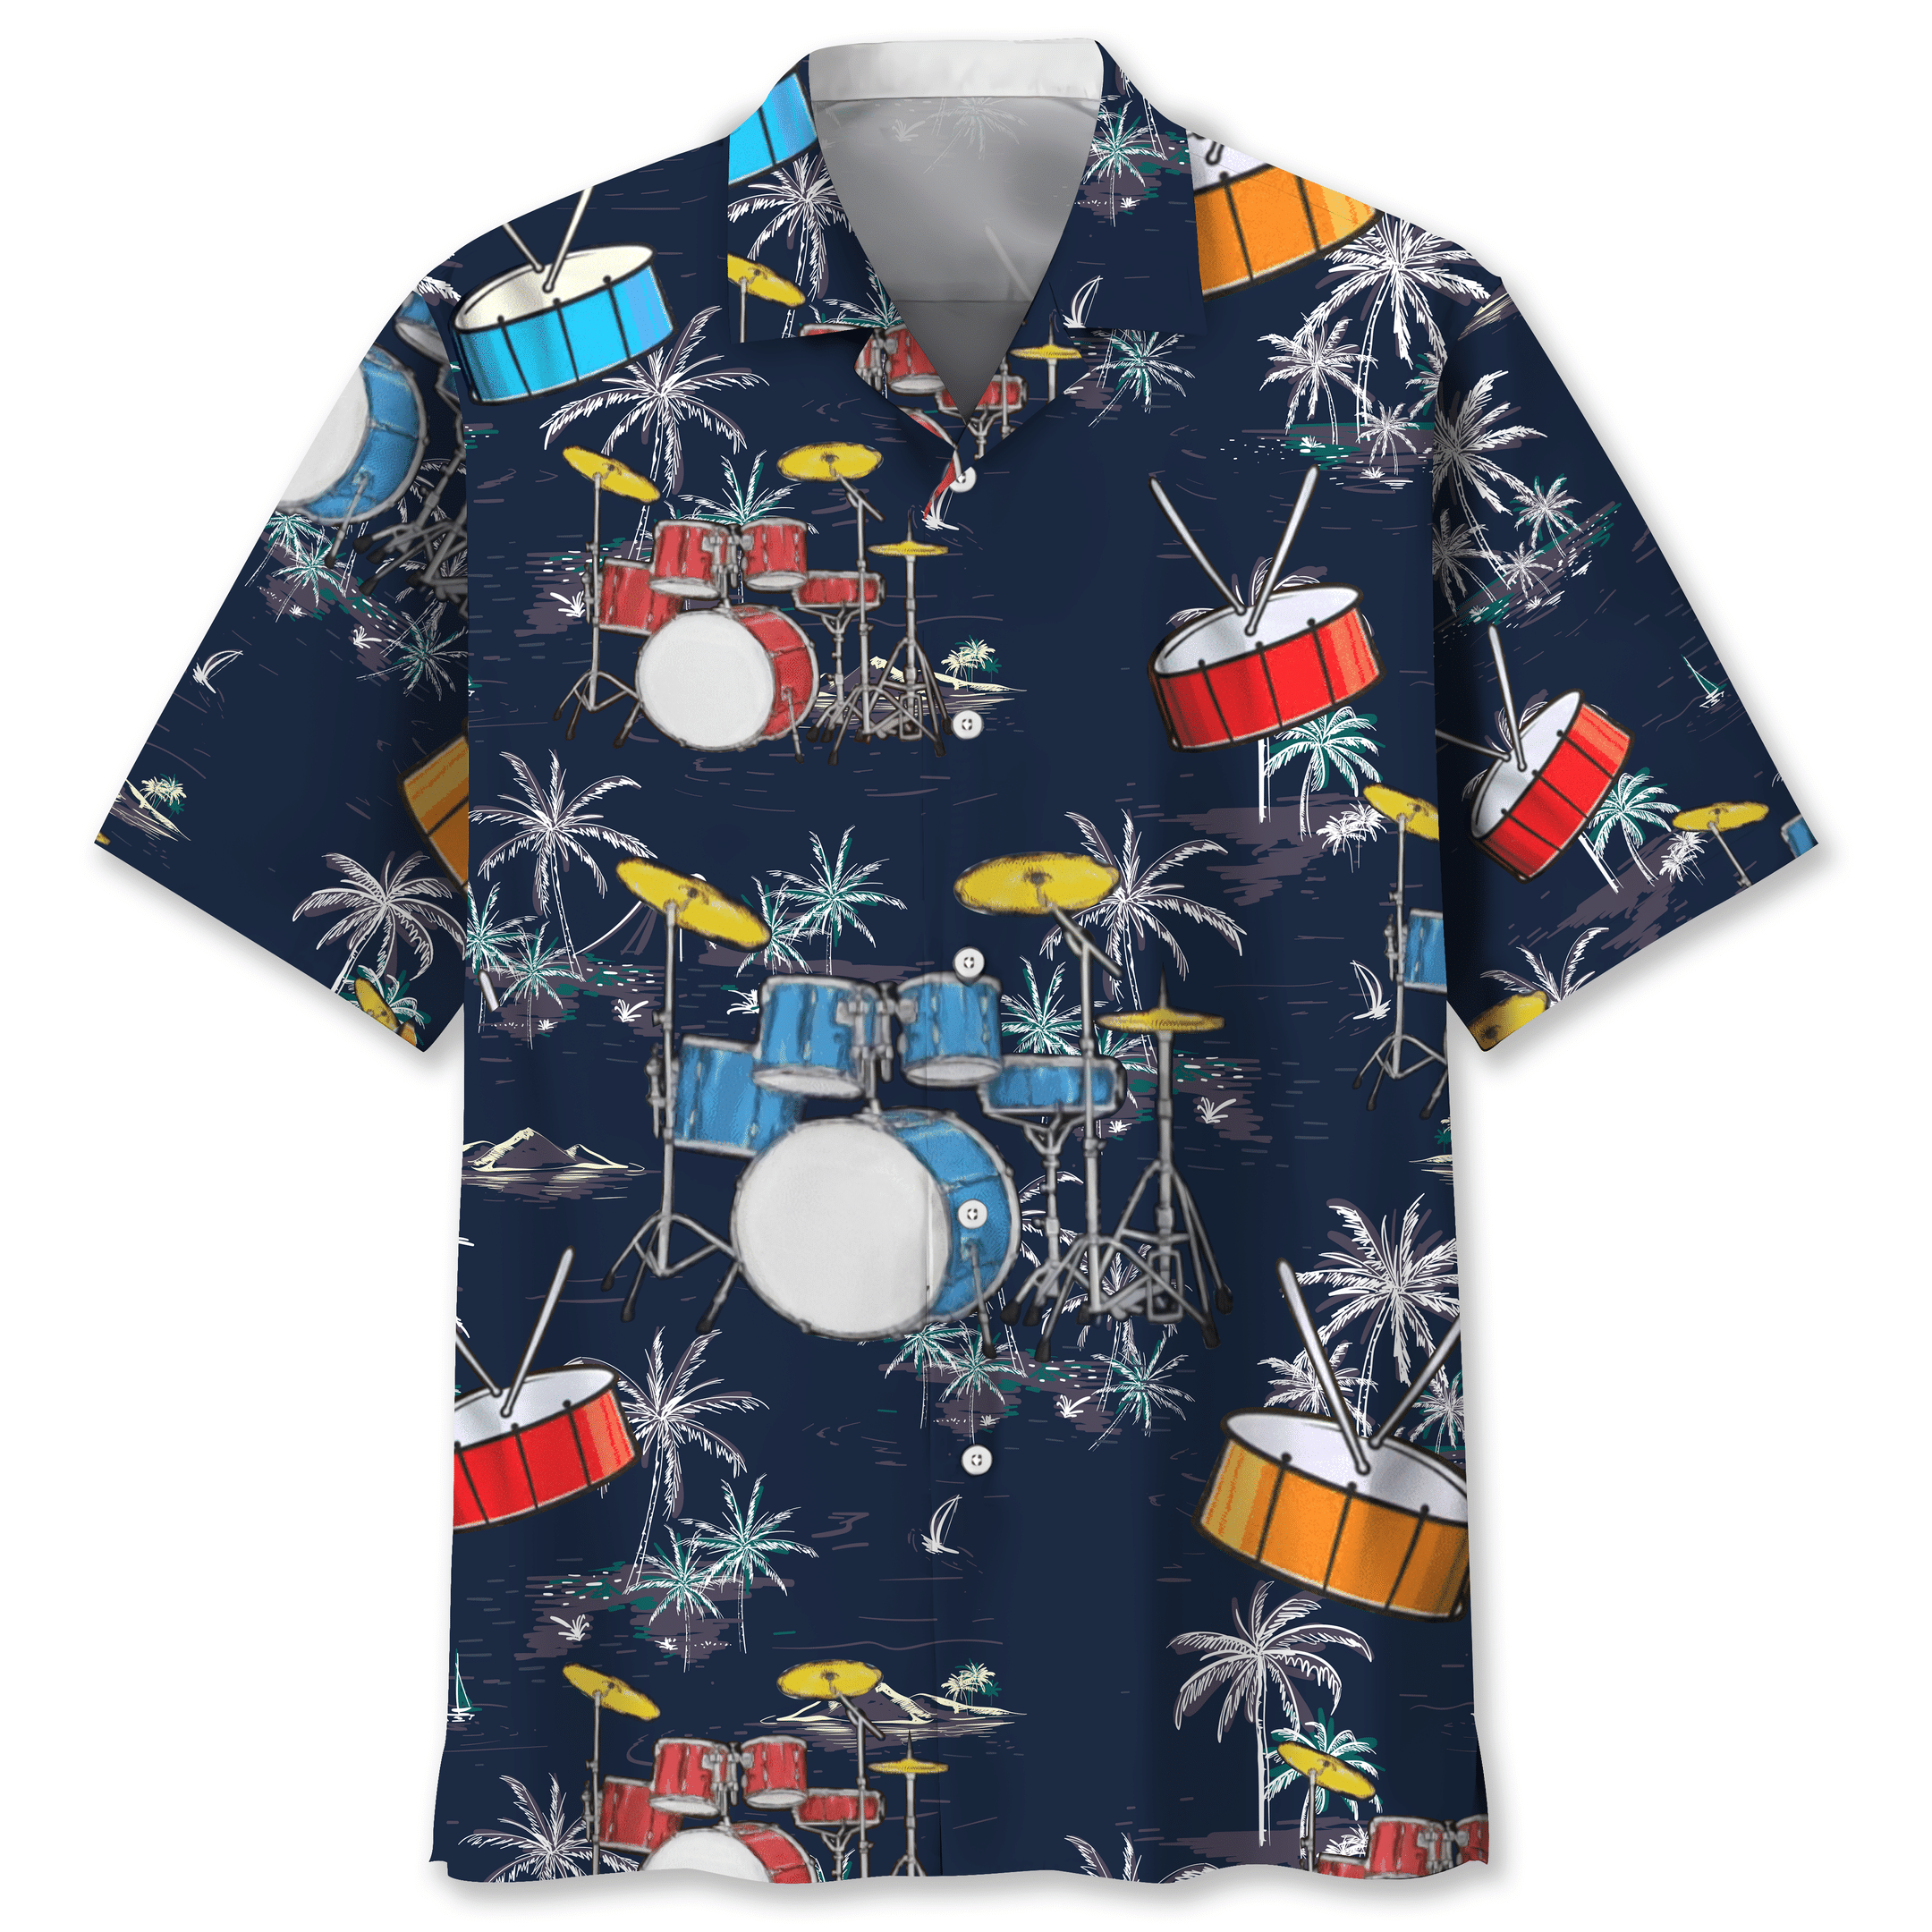 NEW Drum Nature Beach Hawaiian Shirt